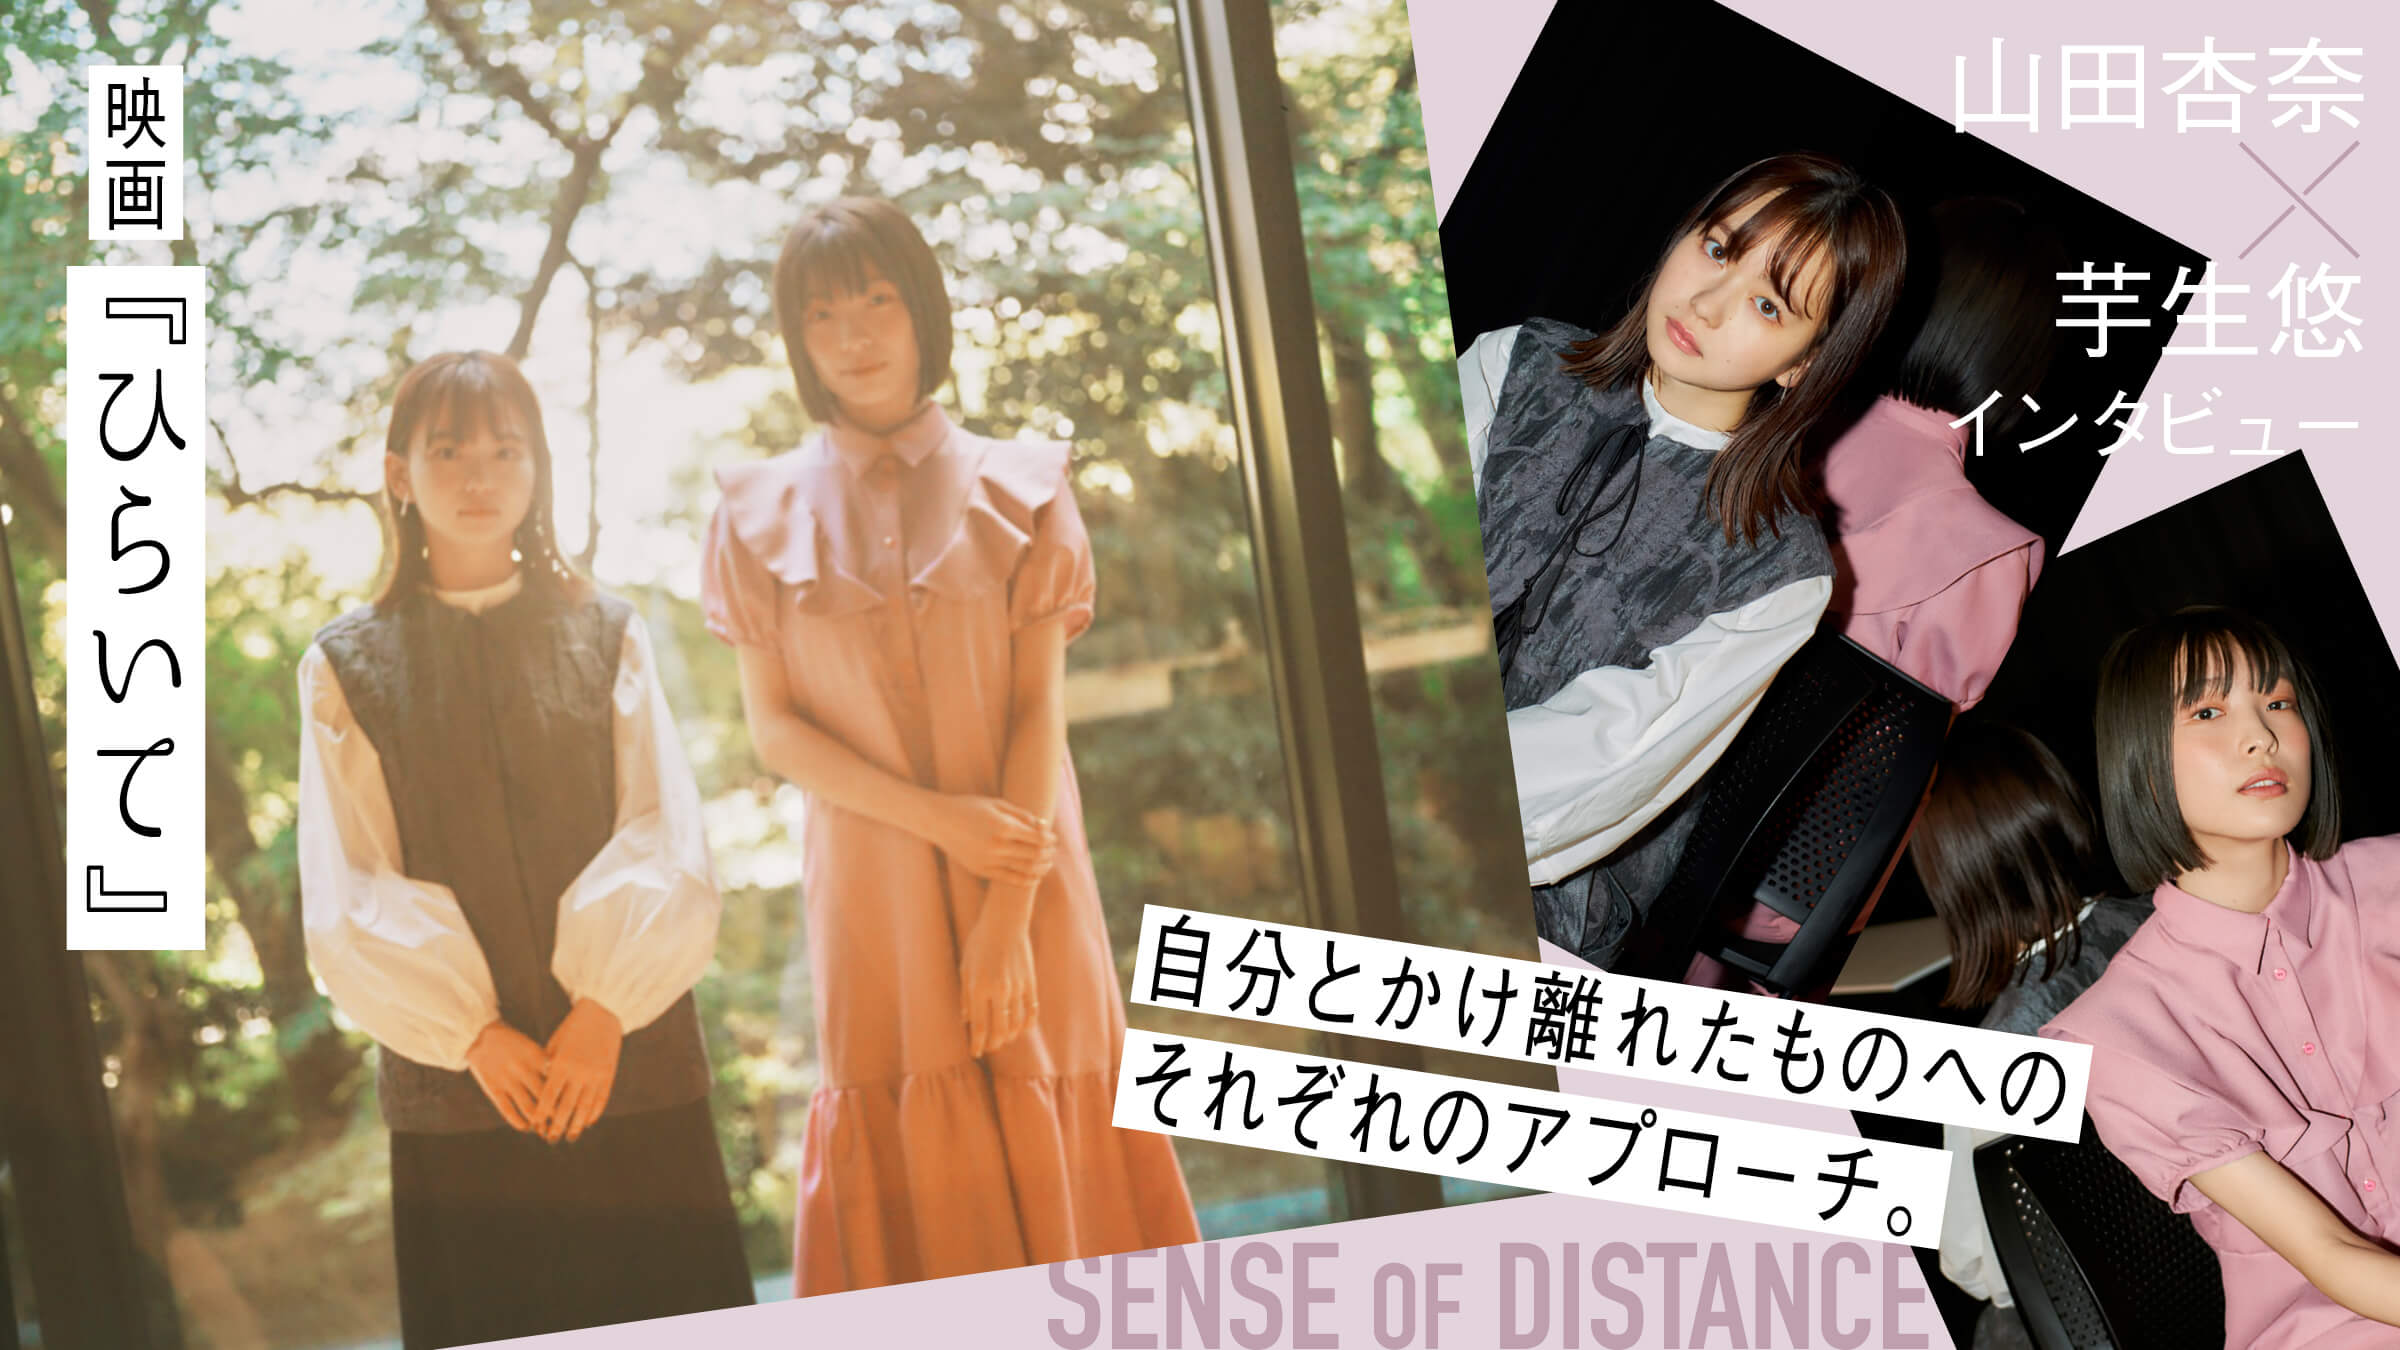 映画『ひらいて』山田杏奈 × 芋生悠 インタビュー自分とかけ離れたものへのそれぞれのアプローチ。